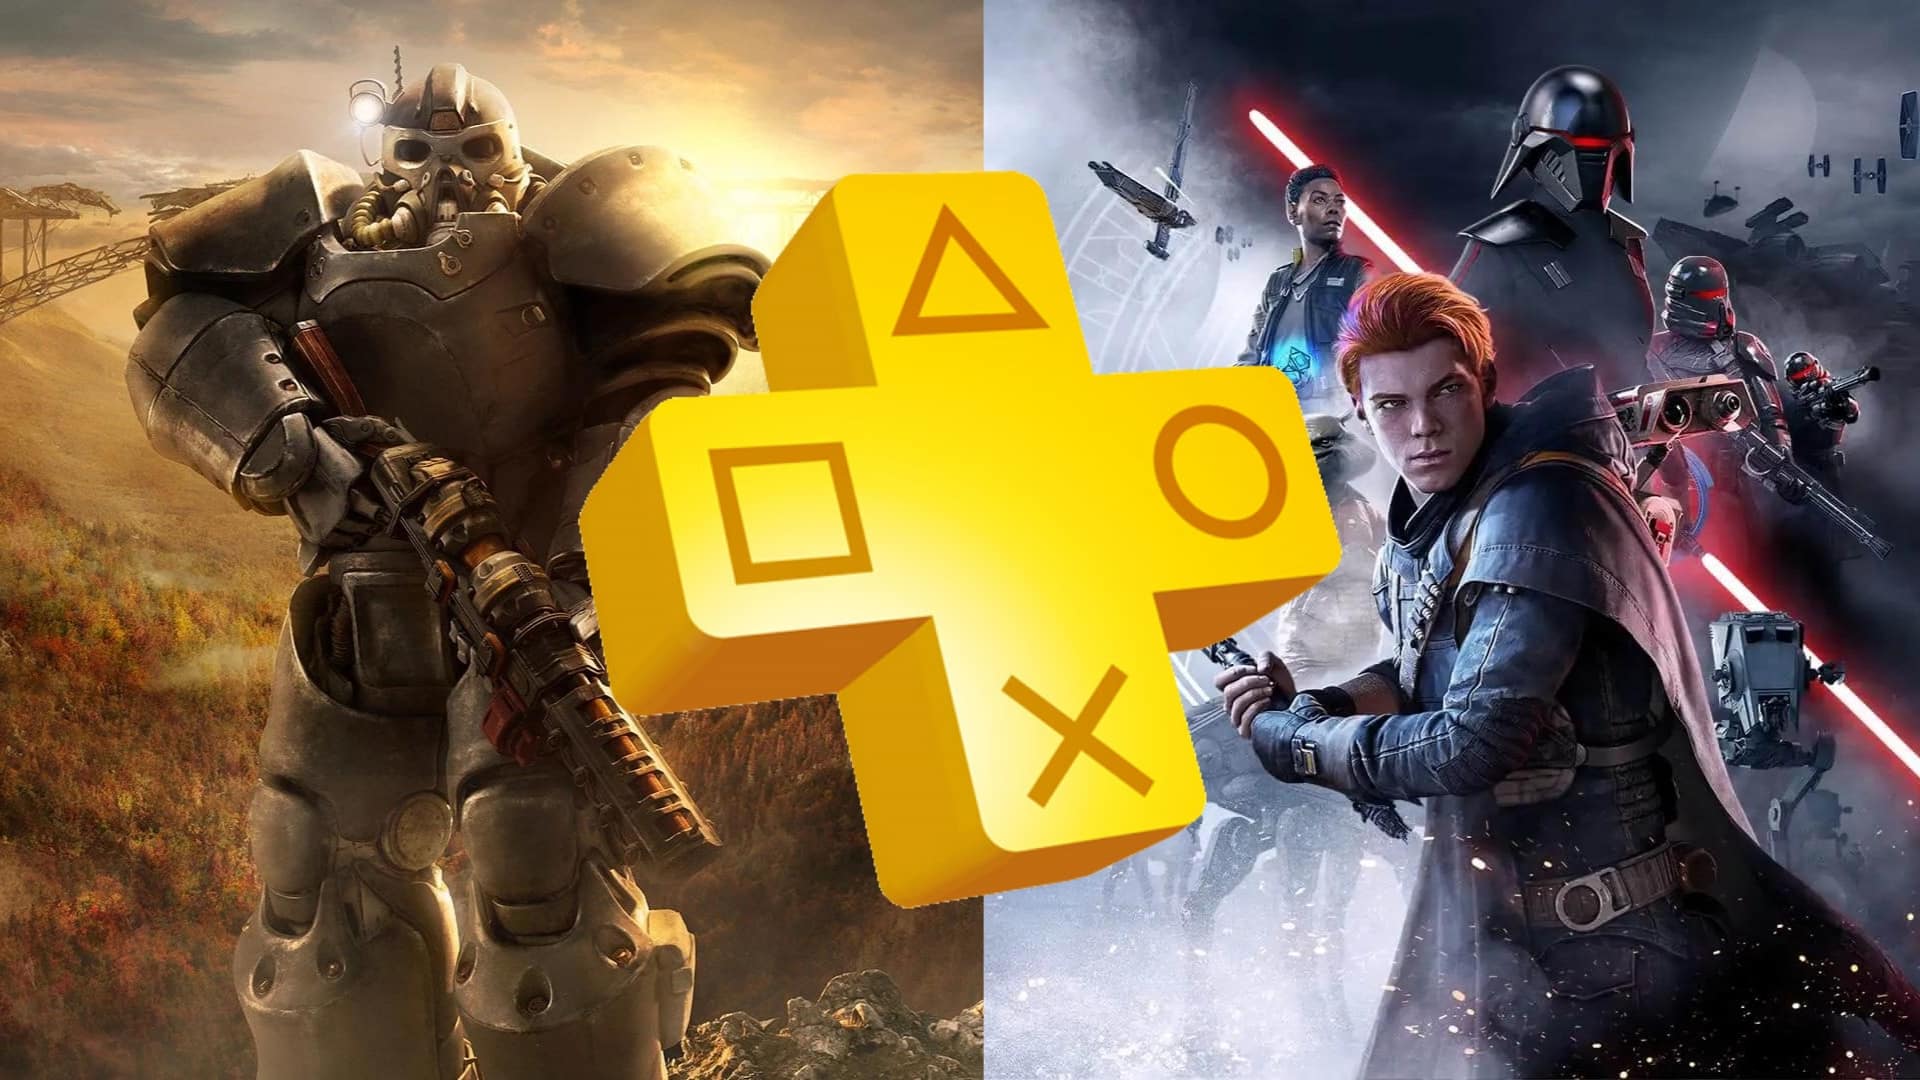 Star Wars Jedi: Fallen Order está grátis no PlayStation Plus no mês de  janeiro 2023 - GKPB - Geek Publicitário